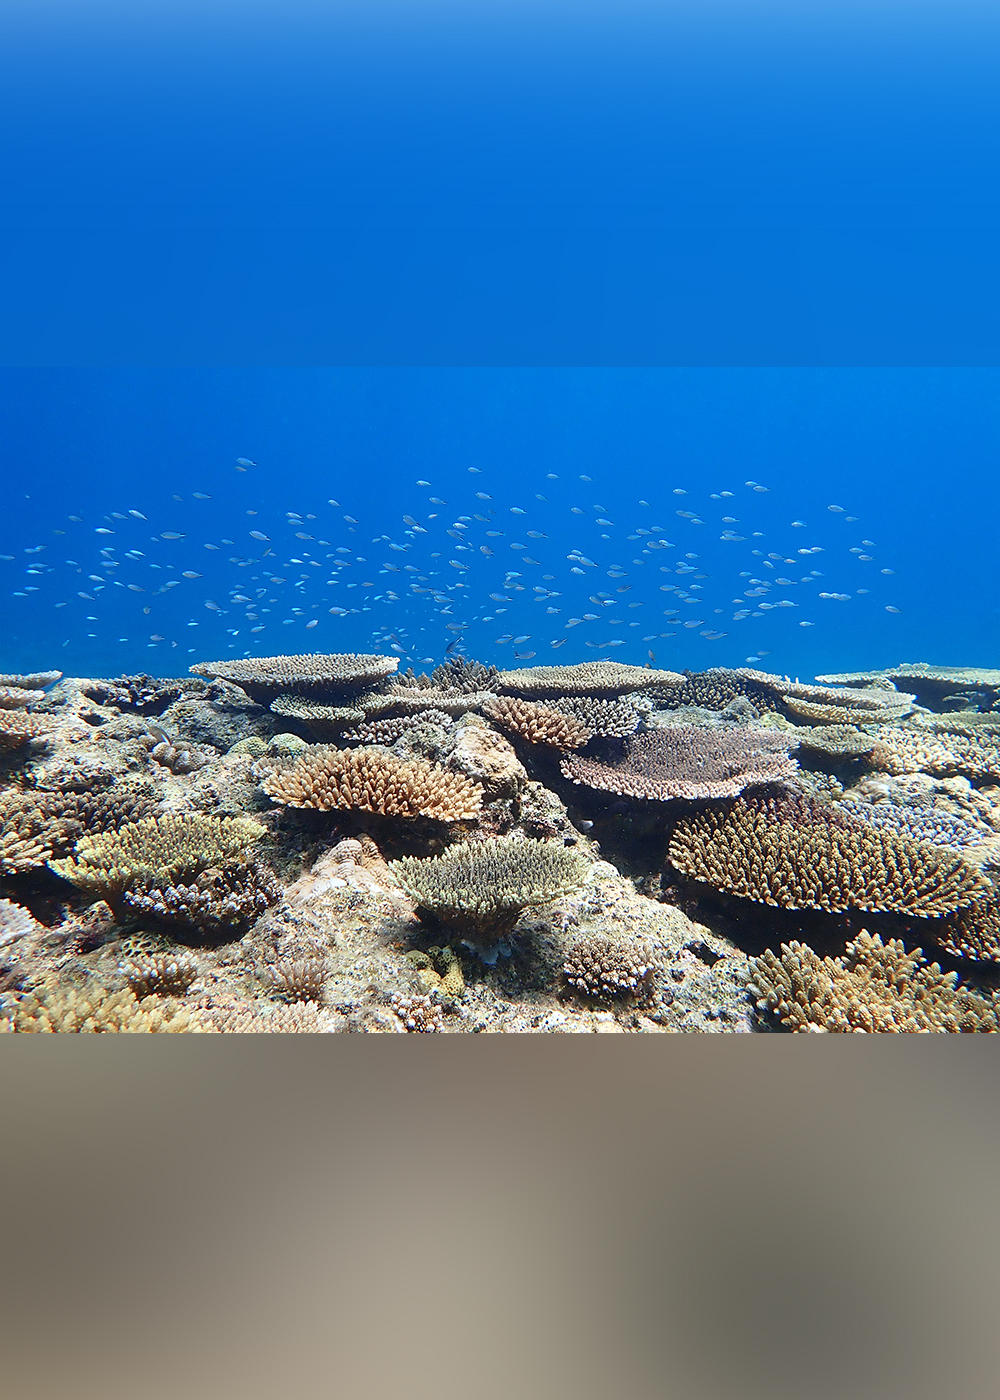 豊かな海の象徴･サンゴ礁を守るために､私たちにもできることがある